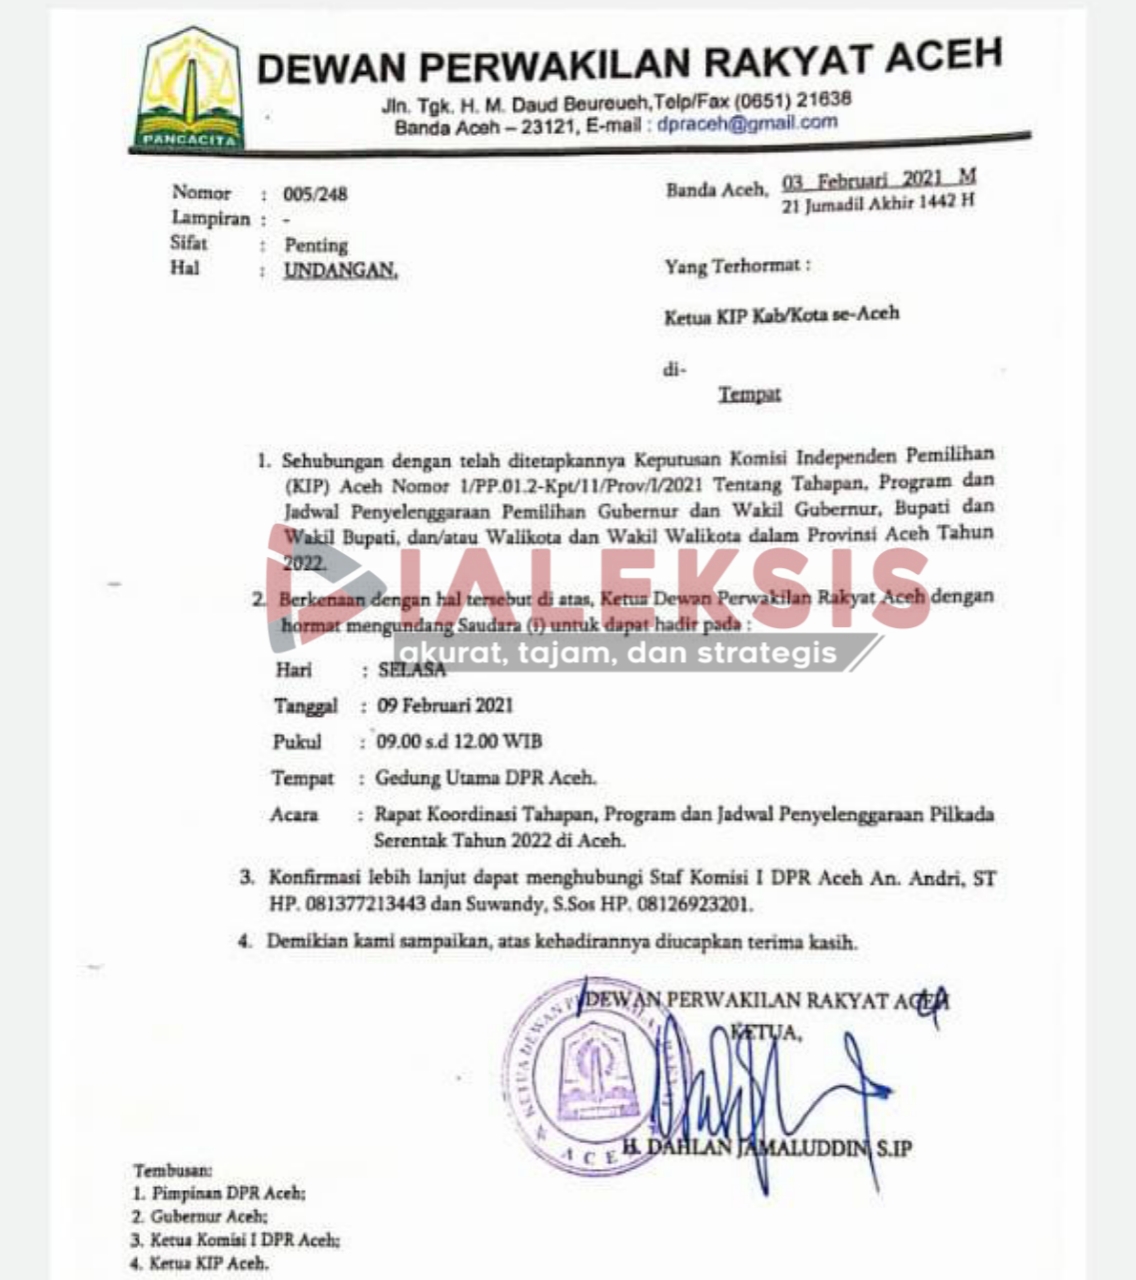 Besok DPRA Bahas Tahapan, Program dan Jadwal Pilkada Serentak Aceh 2022